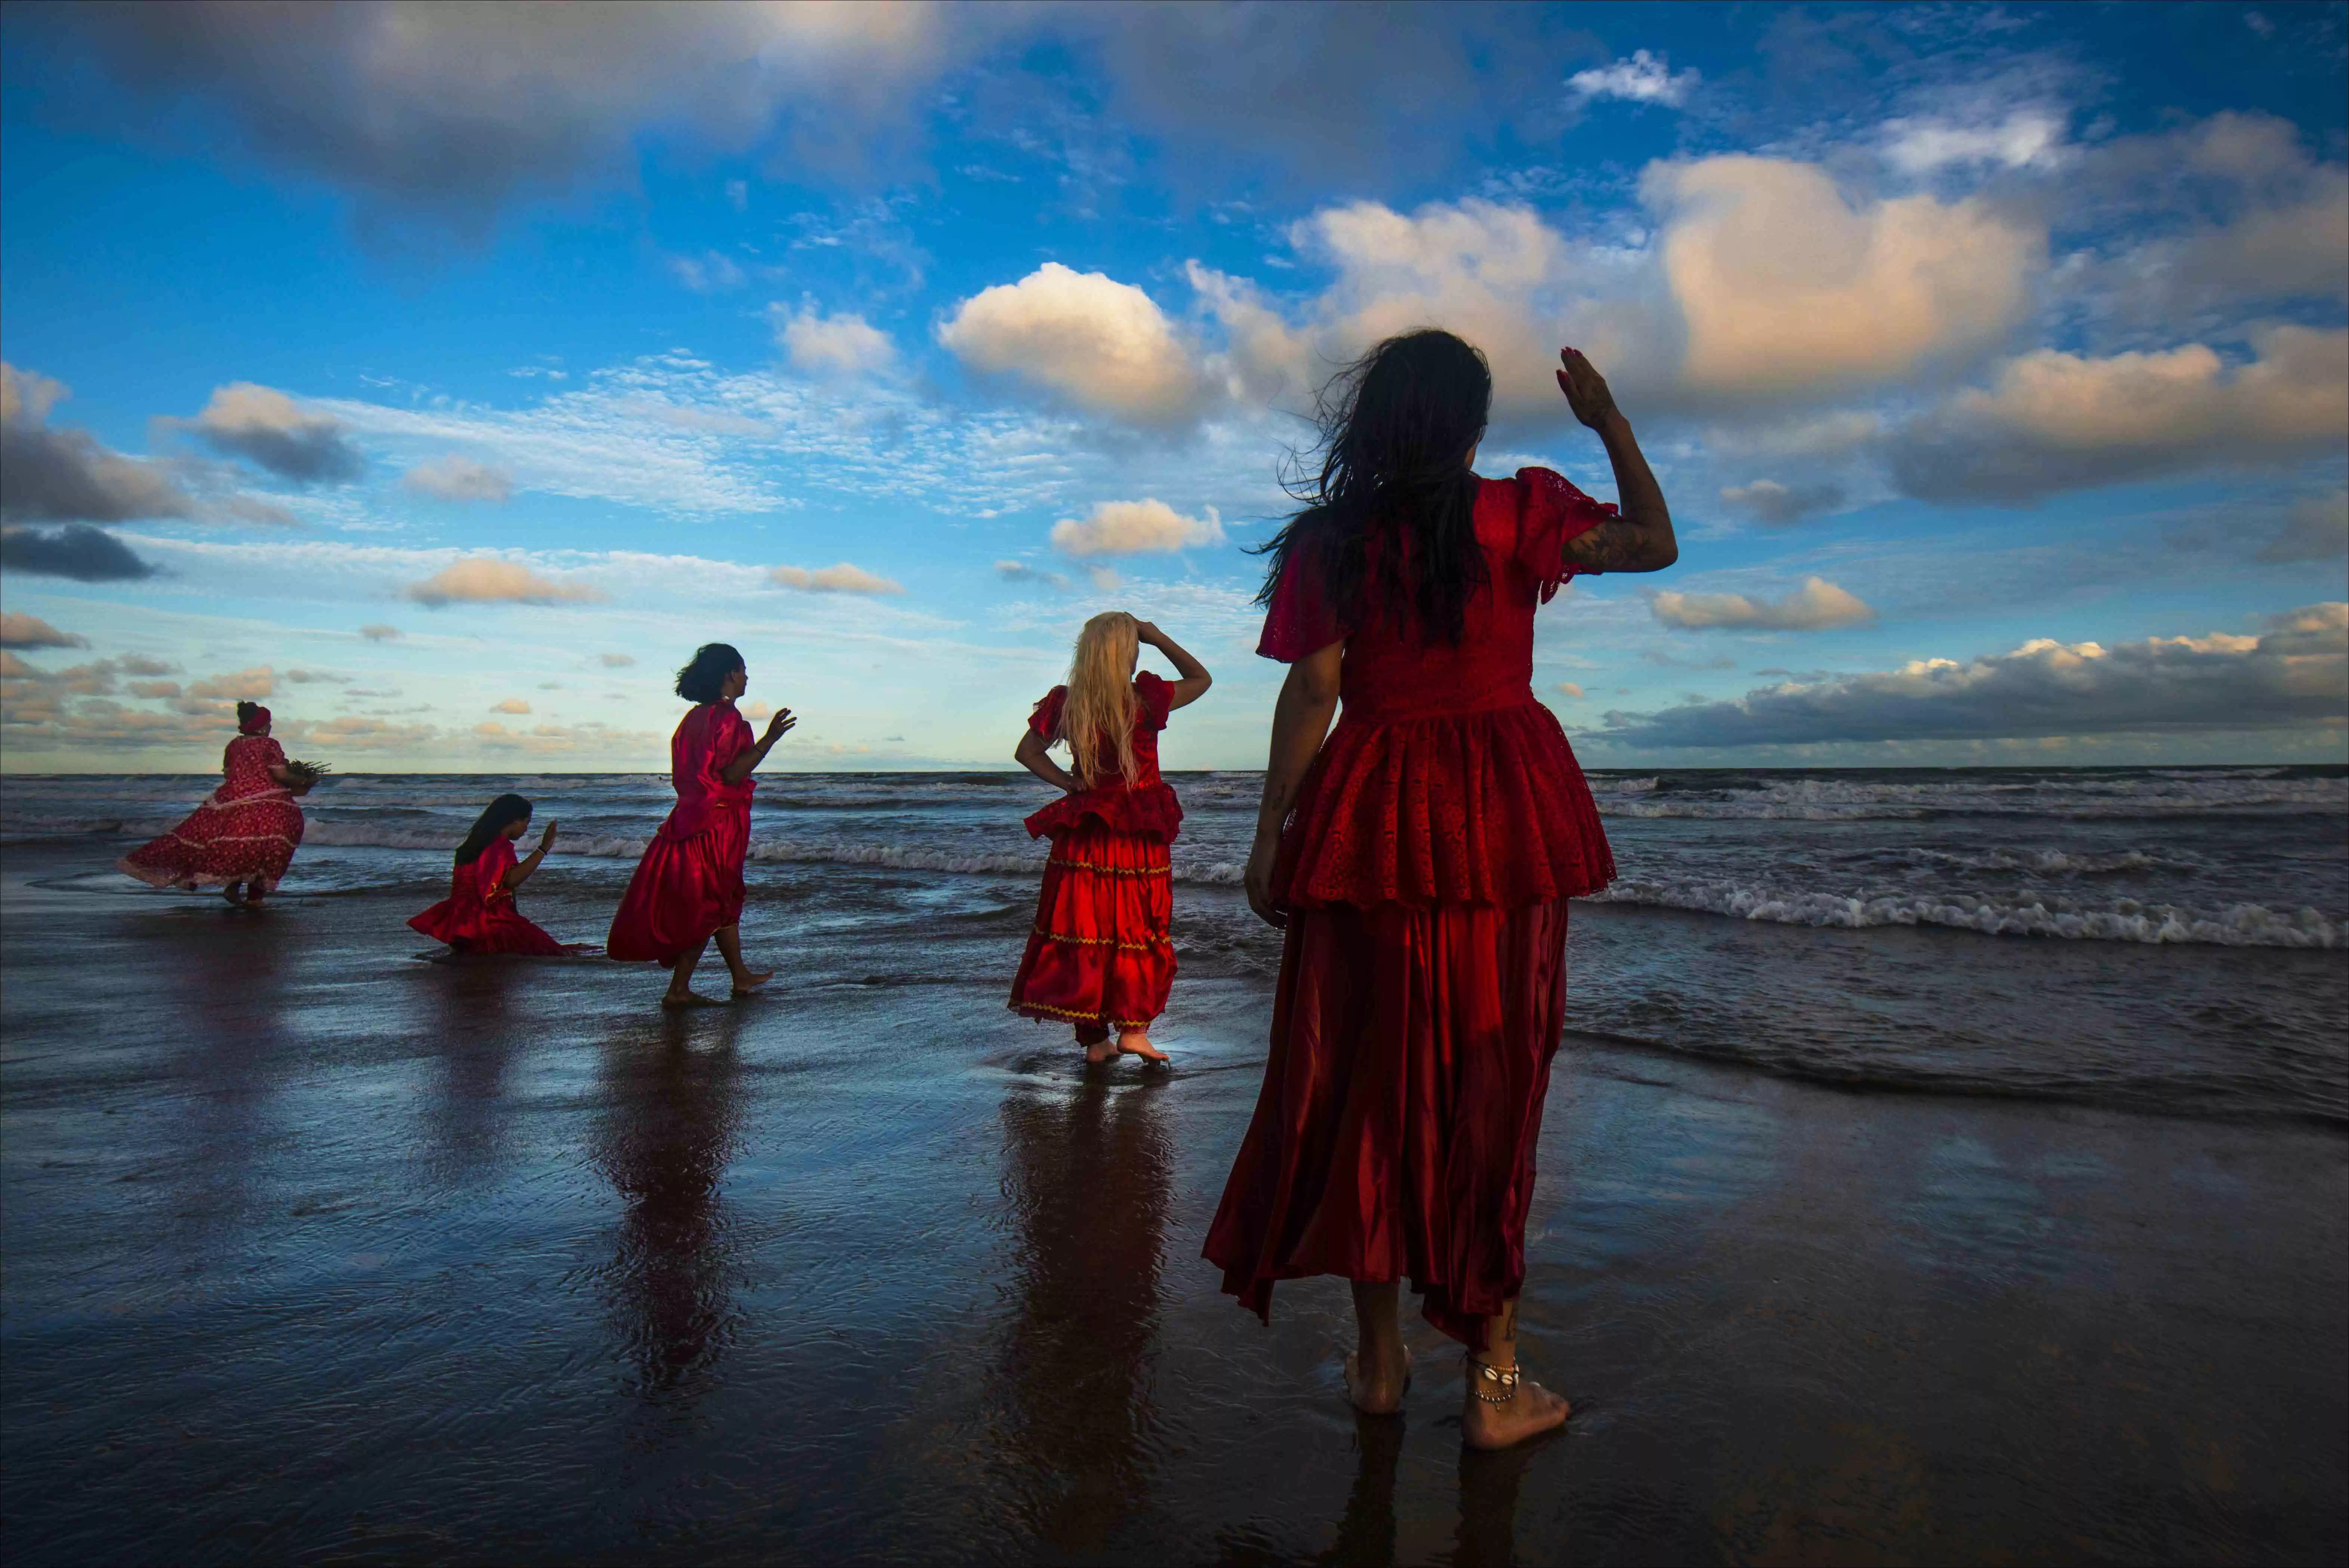 Mulheres são homenageadas em exposição fotográfica, em Florianópolis